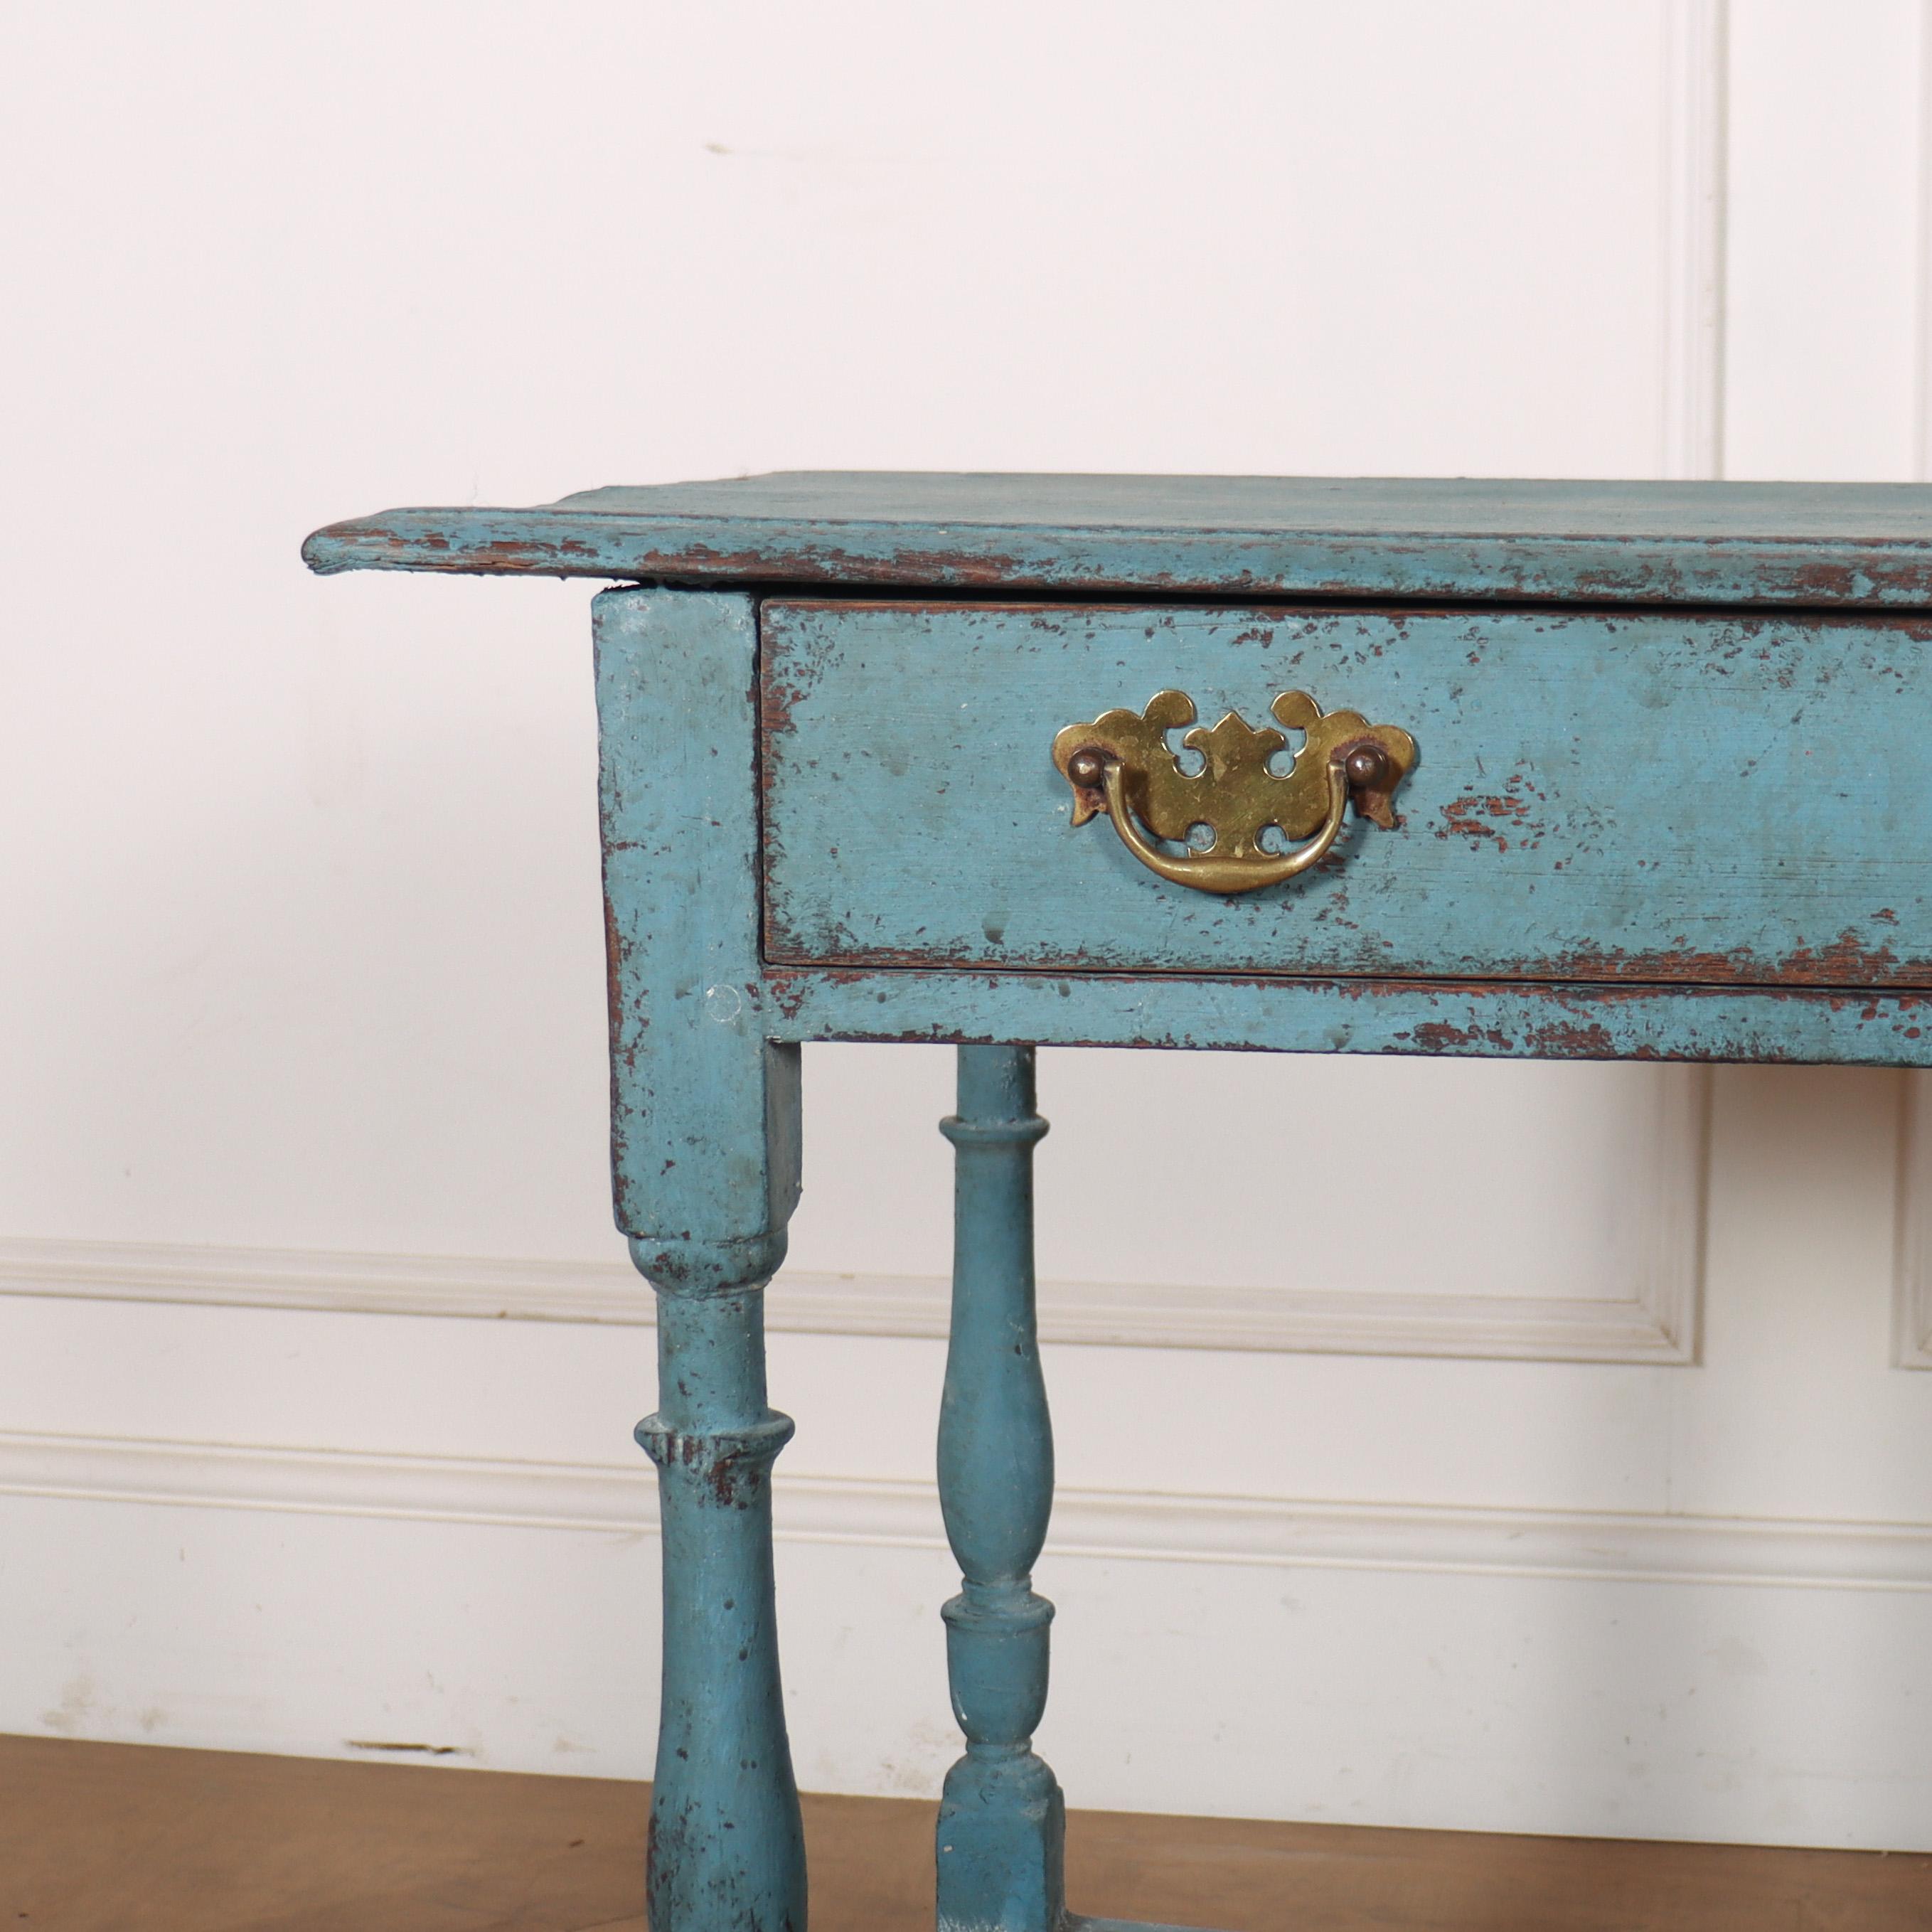 A.C.I.C. table de lampe à un tiroir en chêne anglais peint. 1760.

Référence : 8292

Dimensions
30 pouces (76 cm) de large
18,5 pouces (47 cm) de profondeur
28 pouces (71 cms) de hauteur